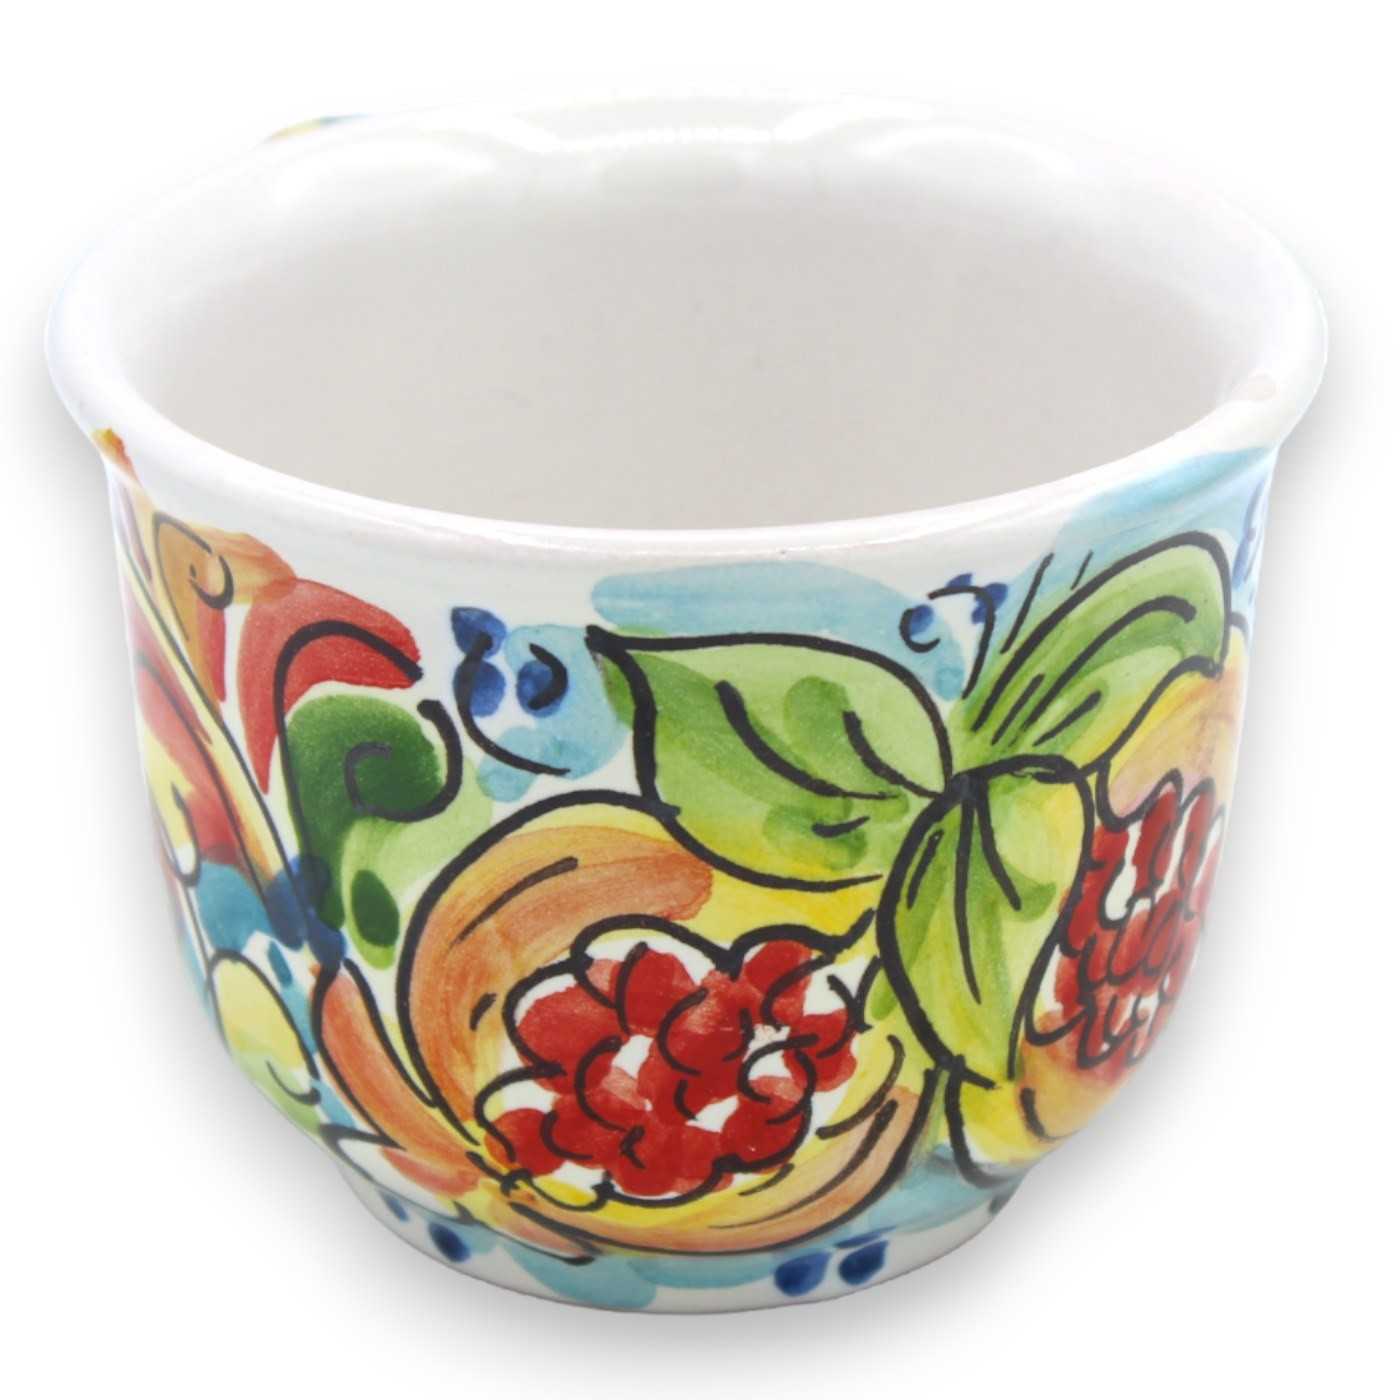 https://siciliabeddashop.com/28217-thickbox_default/tazza-da-latte-con-manico-in-ceramica-caltagirone-l-10-cm-ca-1pz-decoro-frutta-e-barocco-multicolore-casuale.jpg